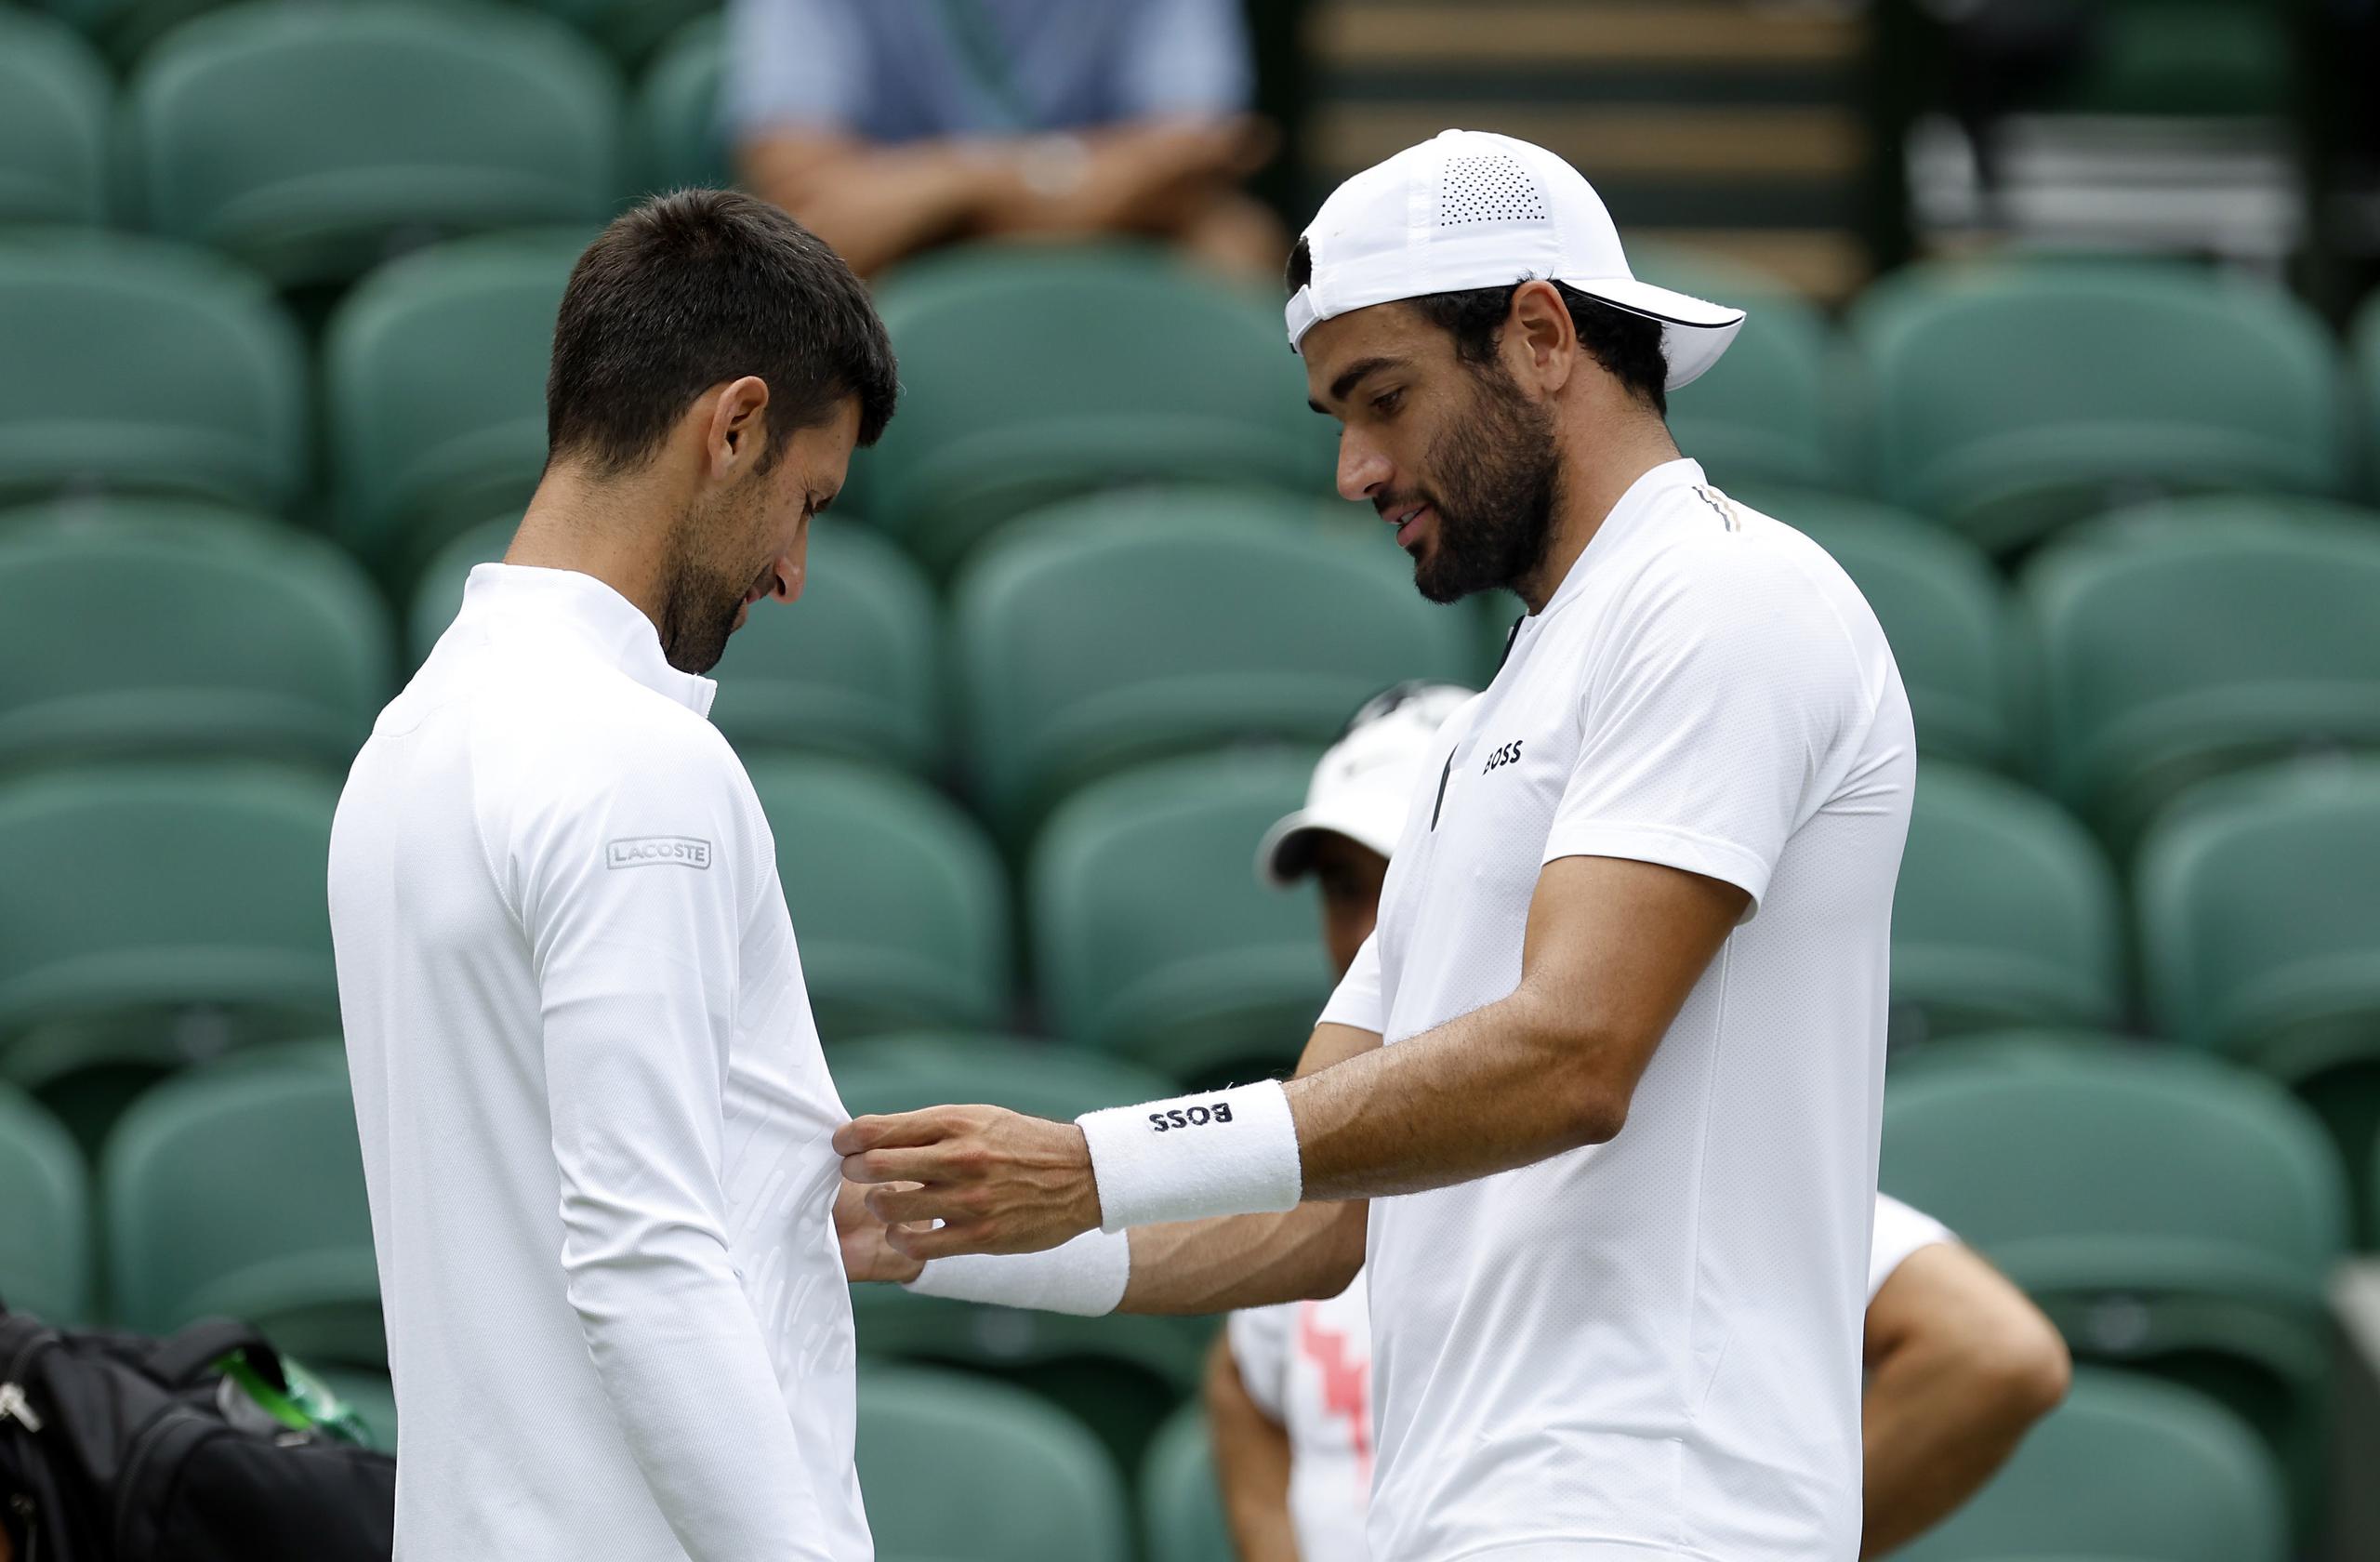 Matteo Berrettini revisa el atuendo de Novak Djokovic durante una práctica en la Cancha Central de Wimbledon, el 23 de junio de 2022. (Steven Paston/PA vía AP)